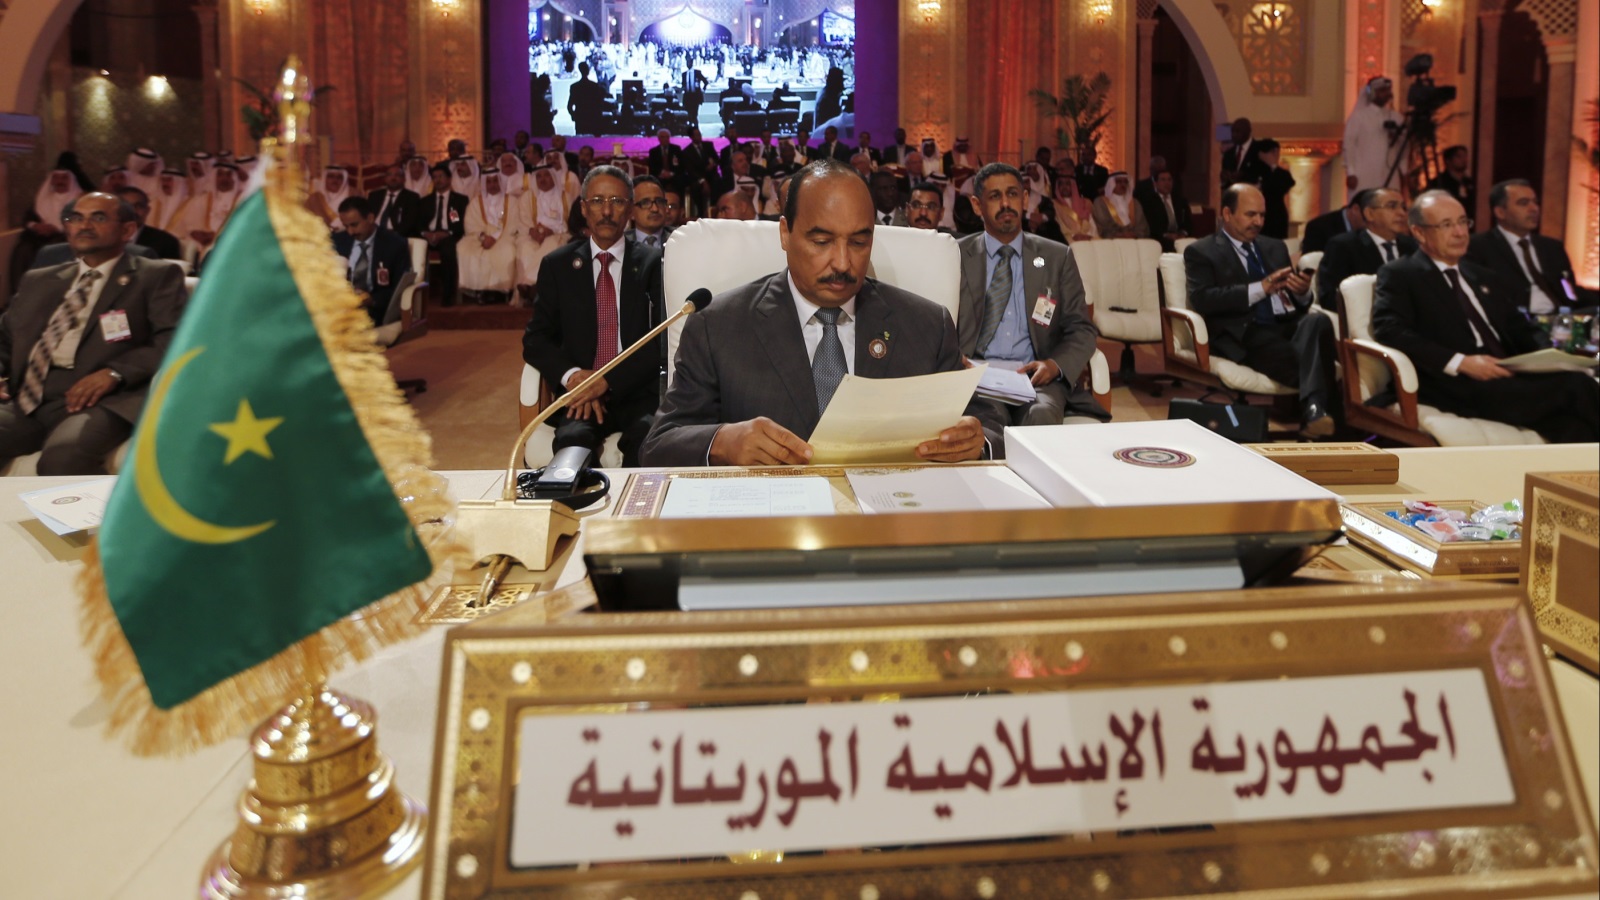 أتمنى ألا يتخذ الرئيس الموريتاني قرار الترشح لمأمورية ثالثة والذي تشير كل الدلائل على أنه يفكر فيه بجد، وأن يأخذ العبرة من سيرة حياة الرئيس اليمني